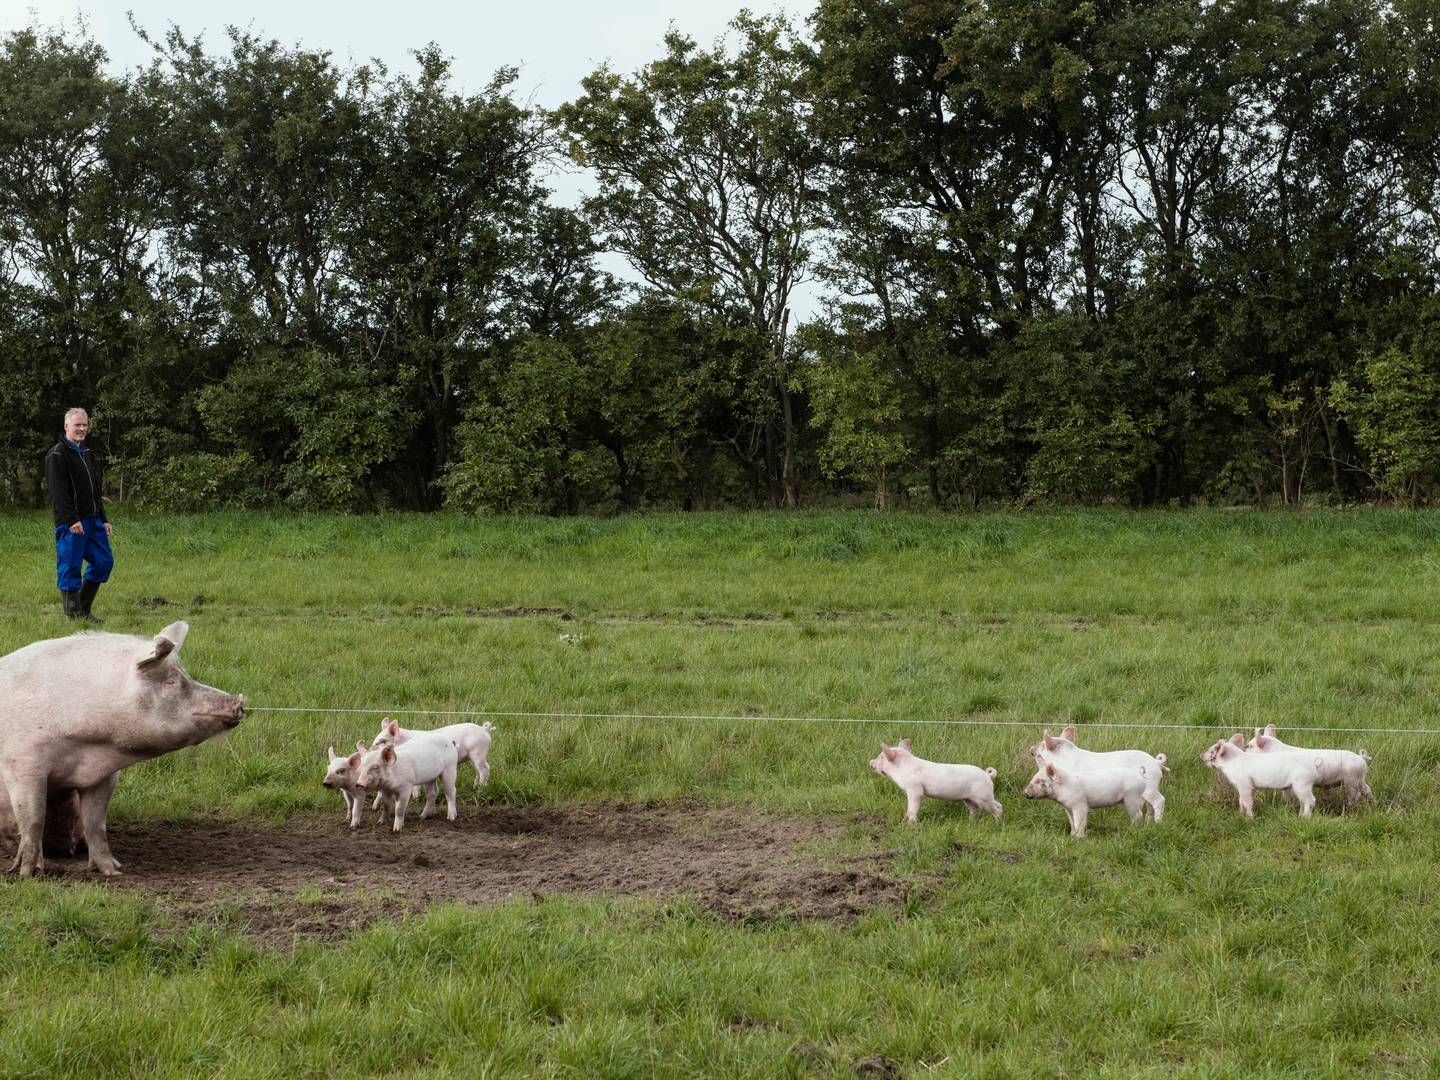 Flere faktorer har puttet pres på de økologiske svineproducenter. | Foto: Morten Lau-nielsen